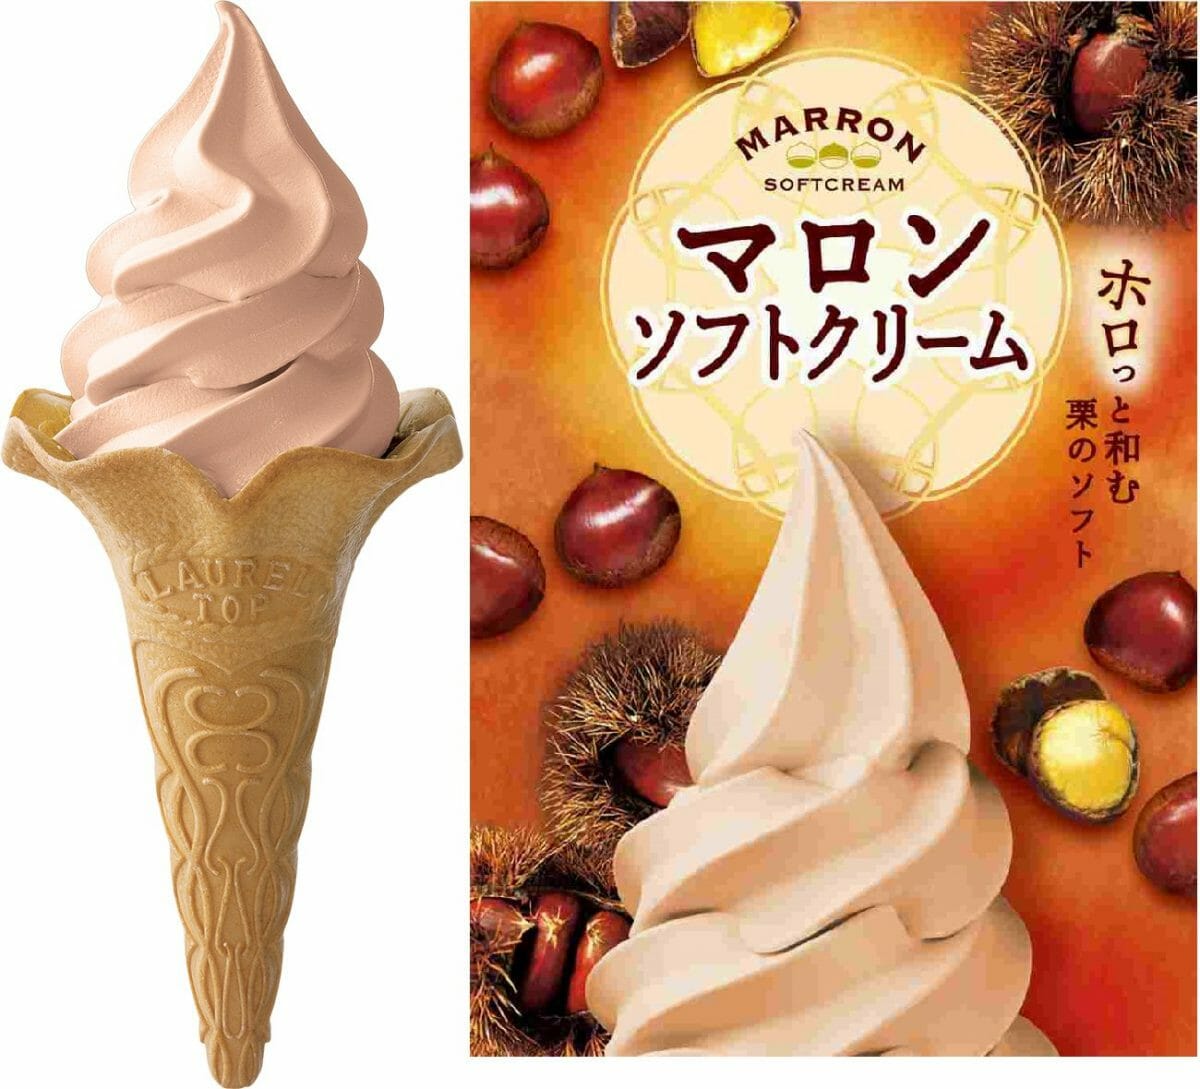 ホロっと和む栗のソフト 秋を代表する味覚 栗 を使った 旬のソフトクリームミックス マロン を発売